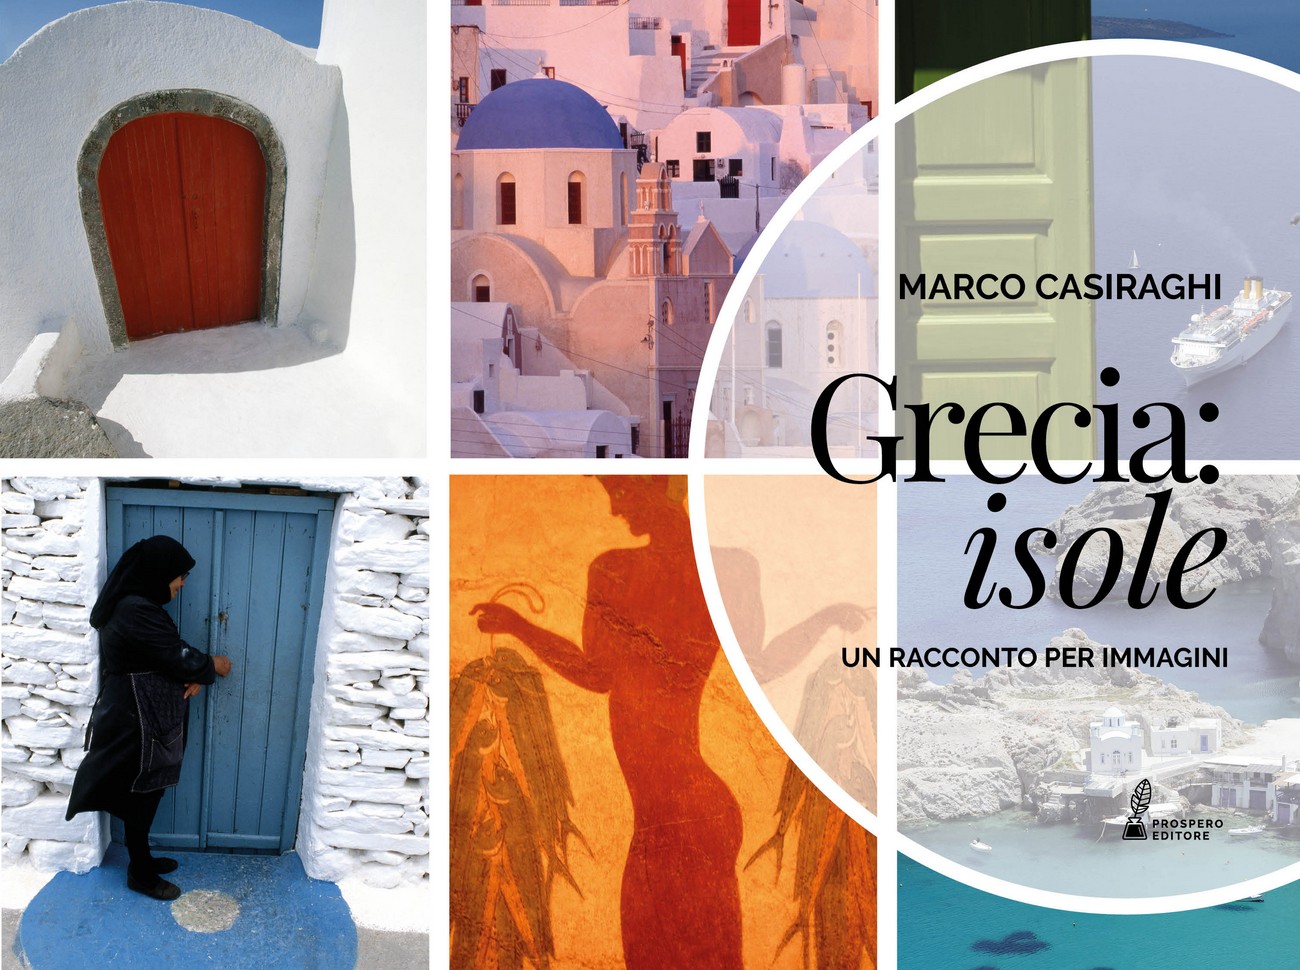 Grecia Isole. Photobook. www.prosperoeditore.com/libri/...